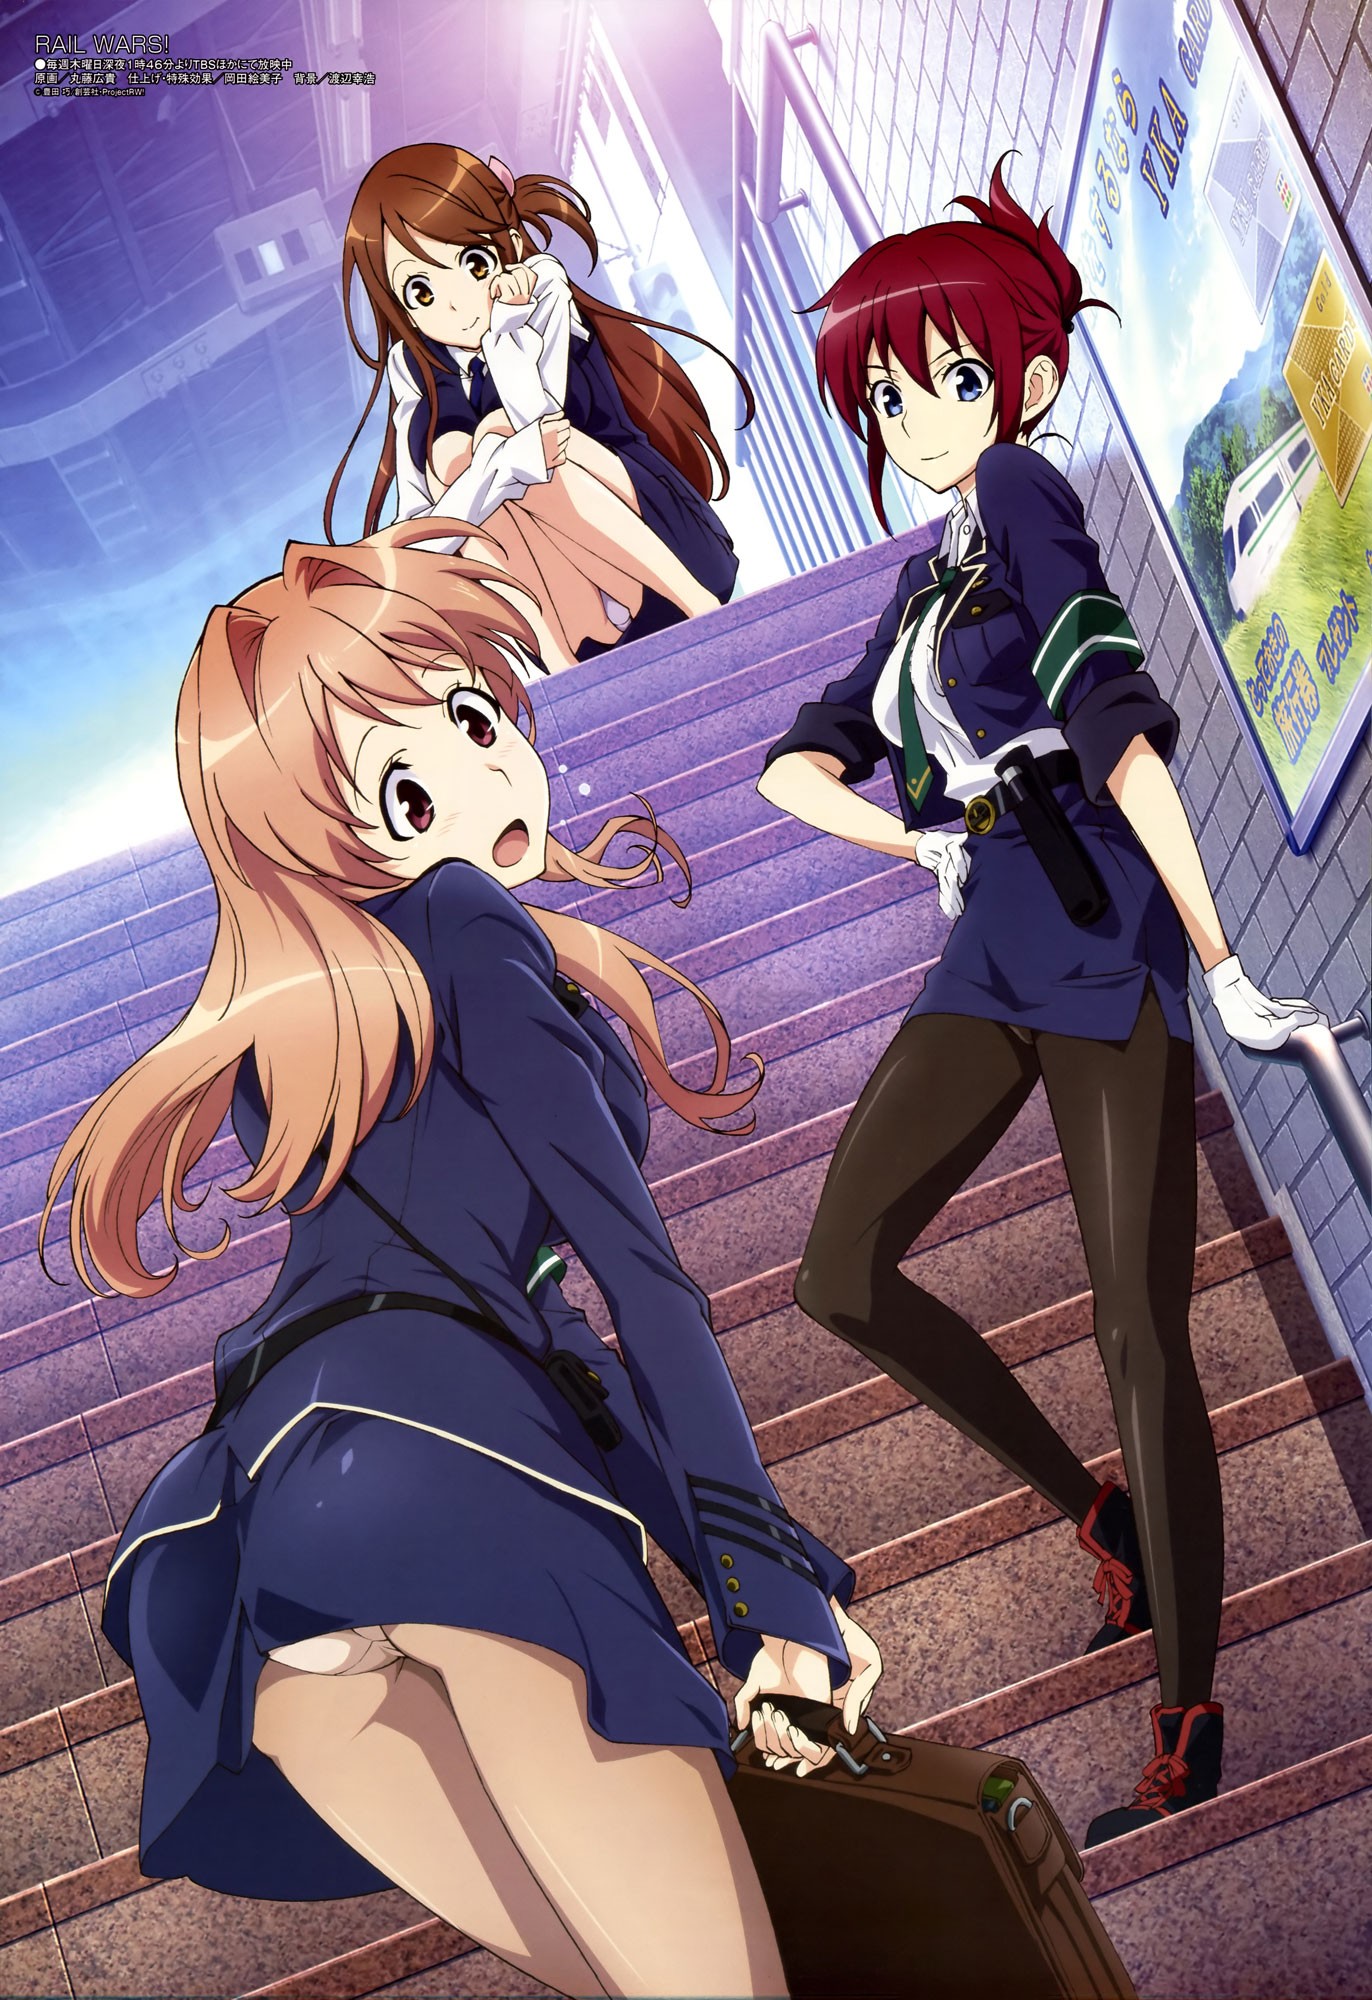 Anime 1372x2000 Rail Wars anime anime girls Sakurai Aoi Koumi Haruka Iida Nana women trio ass stairs embarrassed panties low-angle